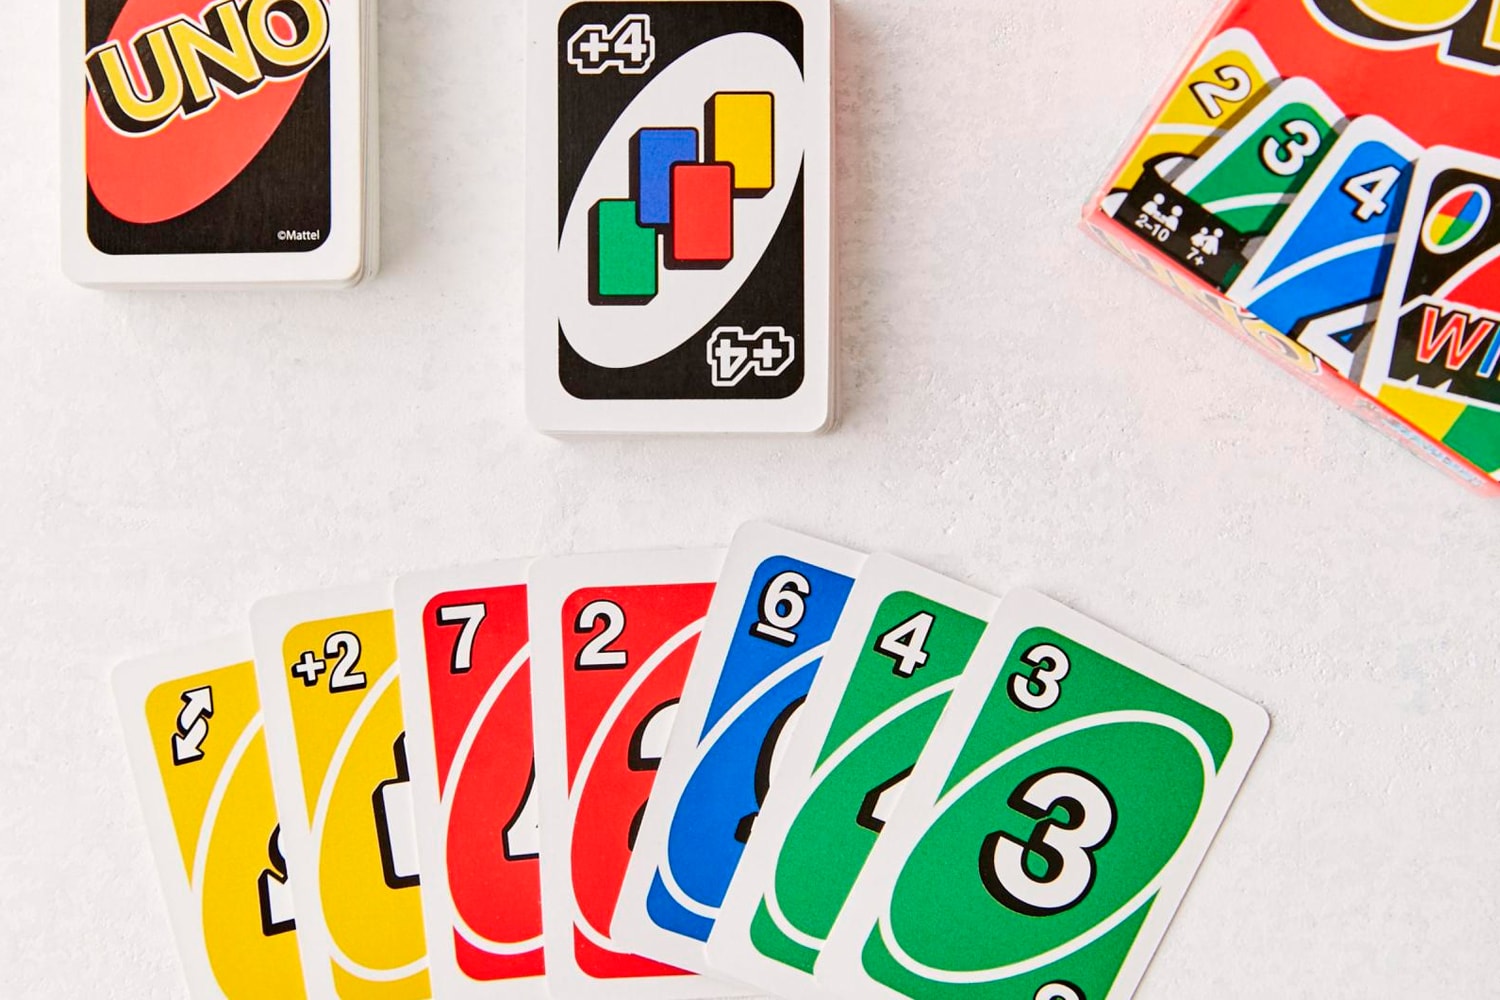 세상에서 가장 작은 크기의 '우노' 카드가 출시됐다, 보드 게임, 카드 게임, UNO, 원카드